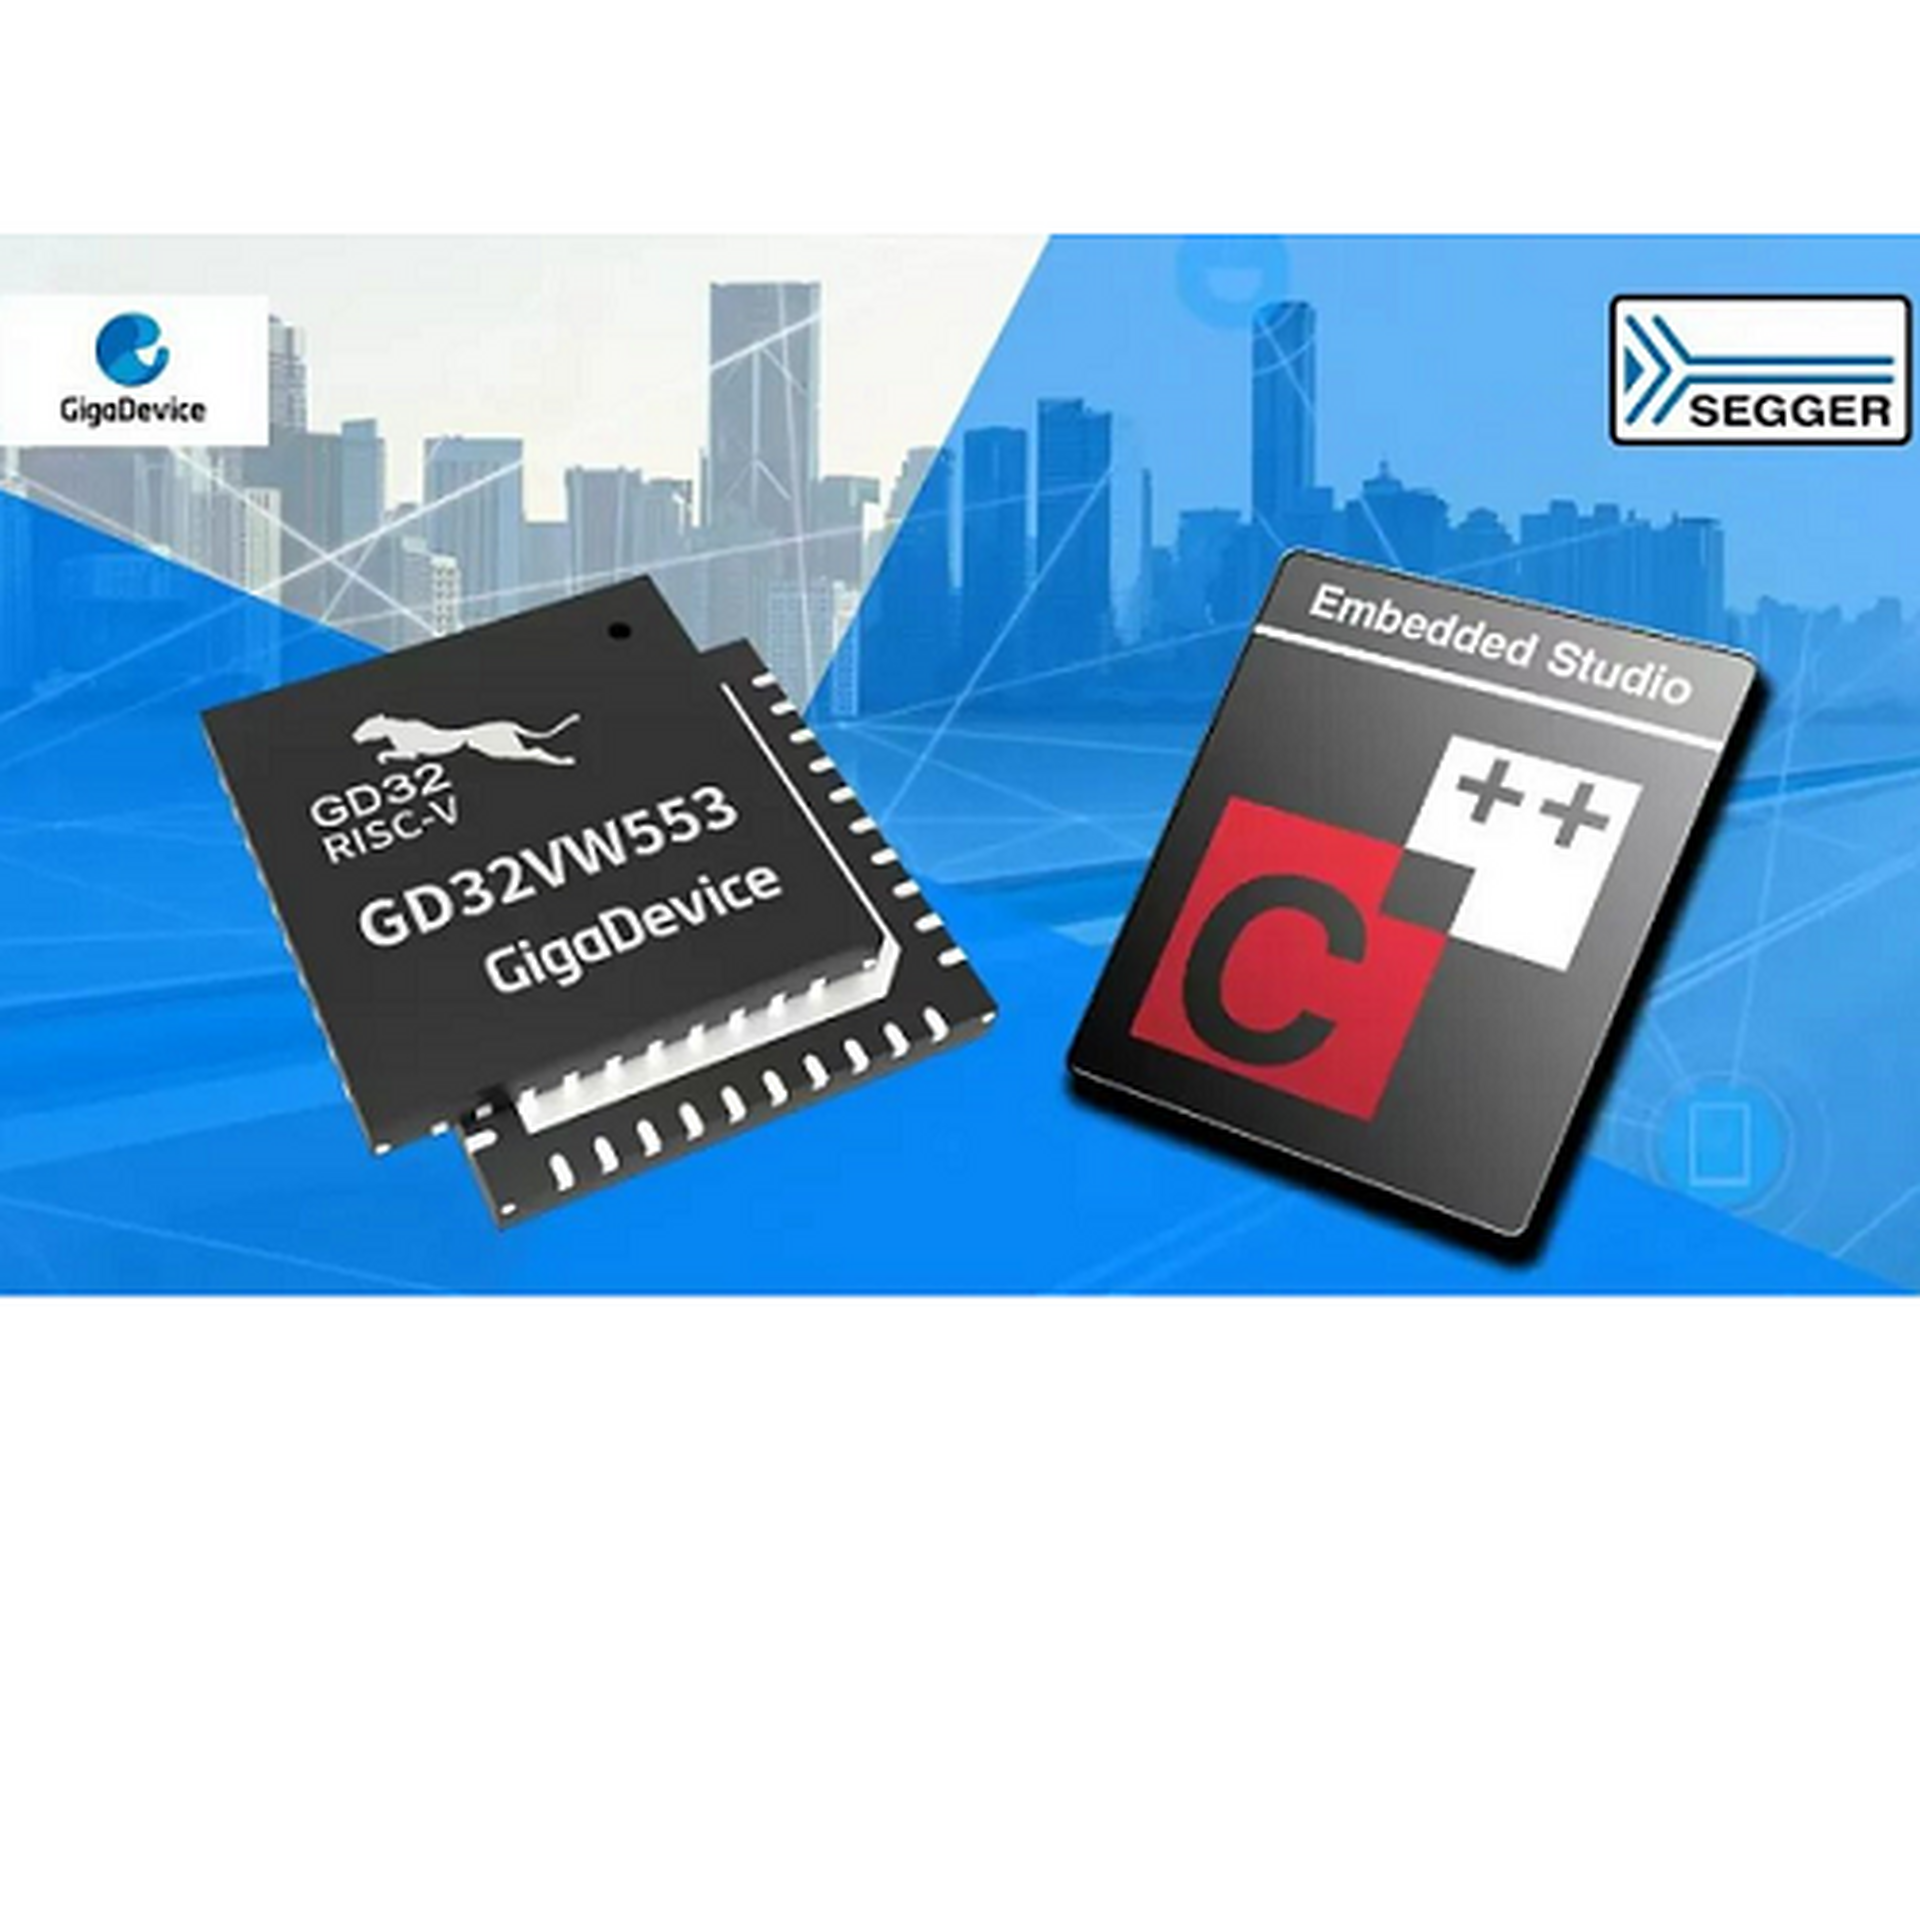 Giga Device GD32 VW553 Segger Embedded Studio